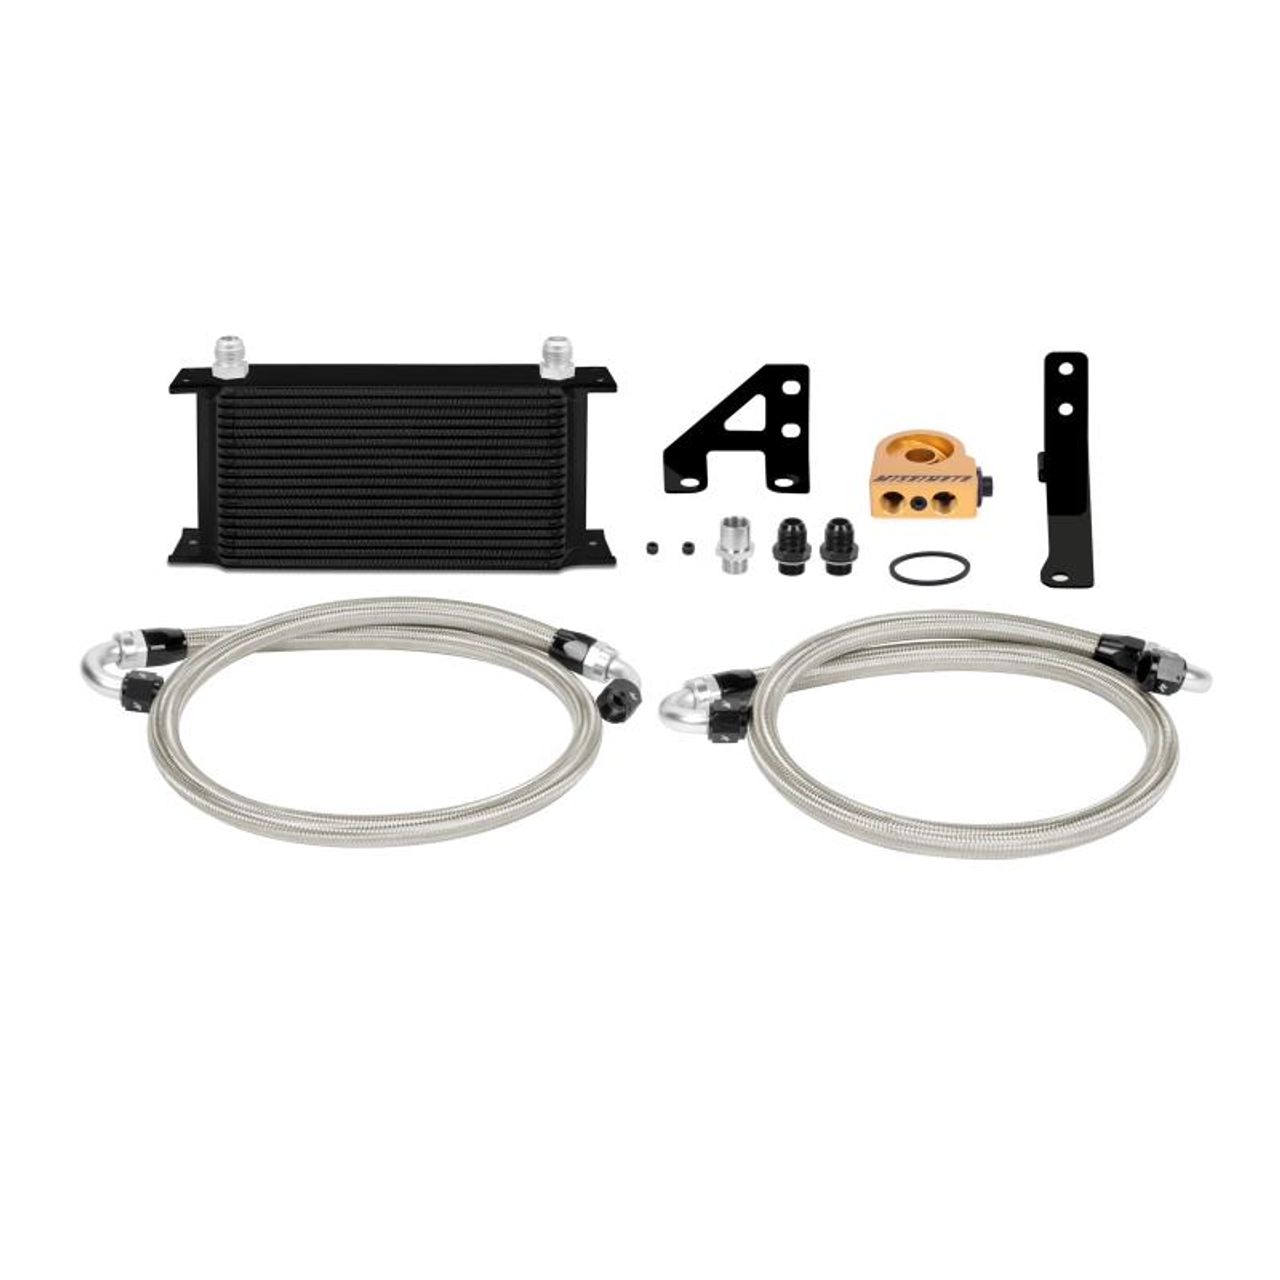 Mishimoto 15 Subaru STI Thermostatic Oil Cooler Kit - Black